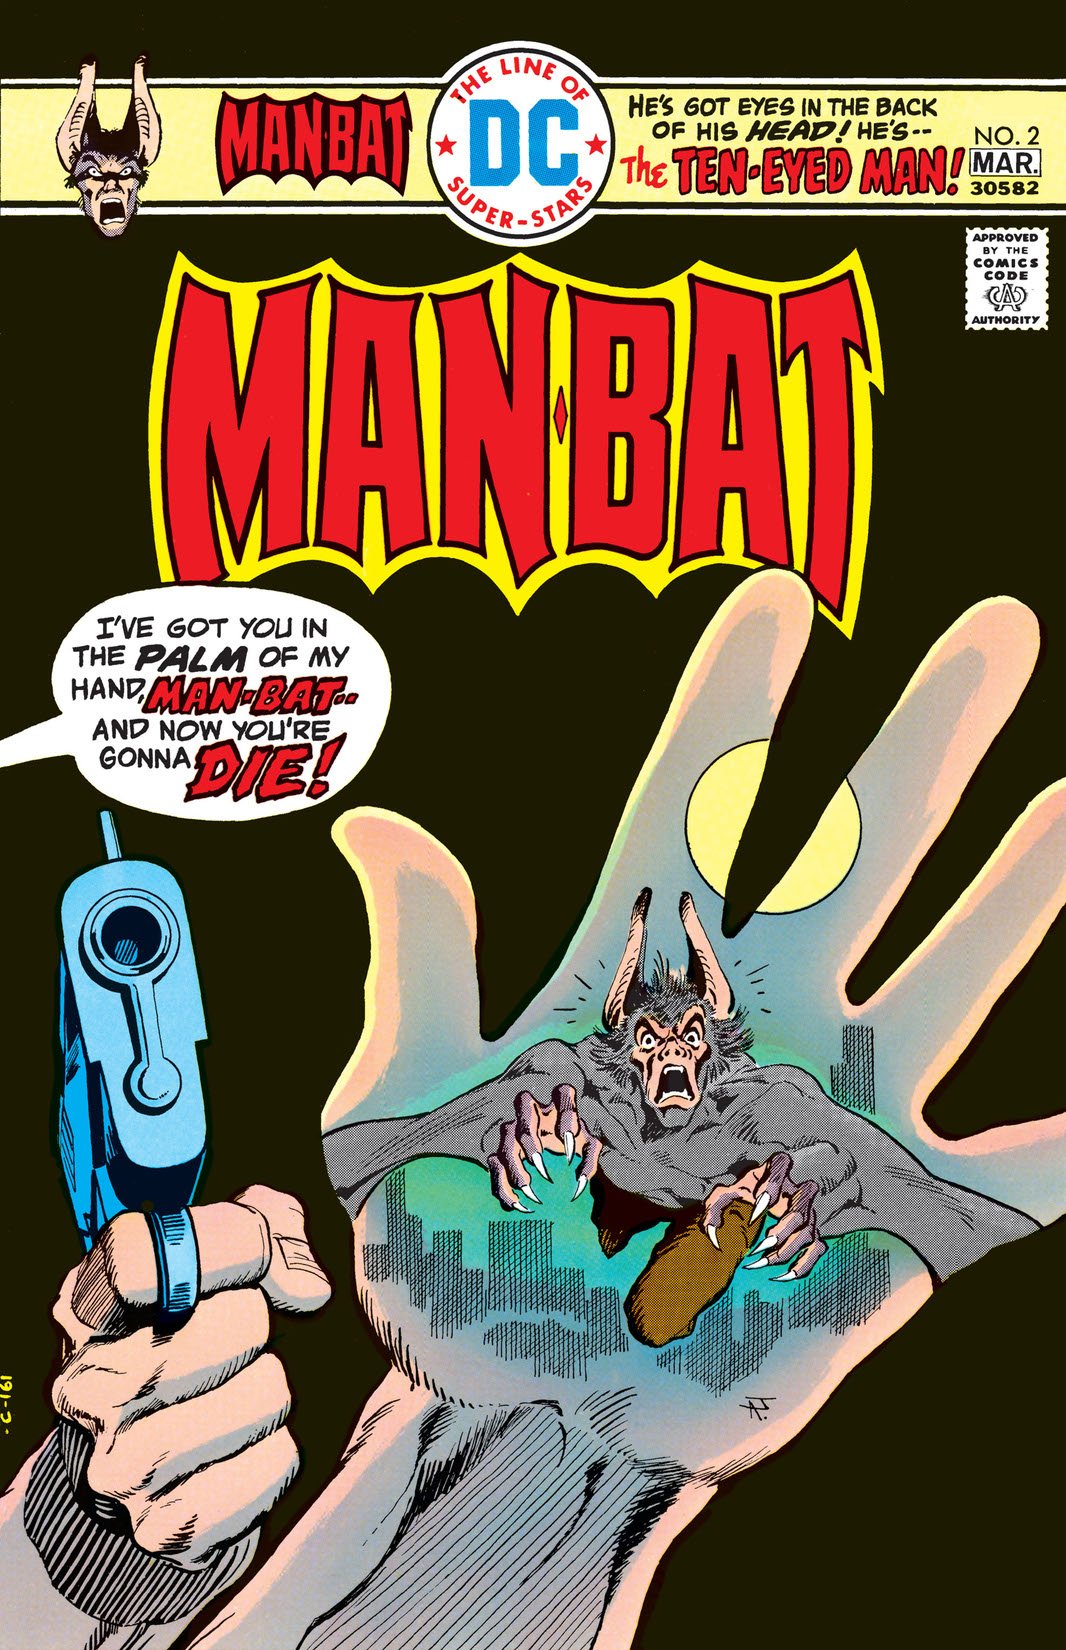 Man-Bat (1976-) #2 preview images